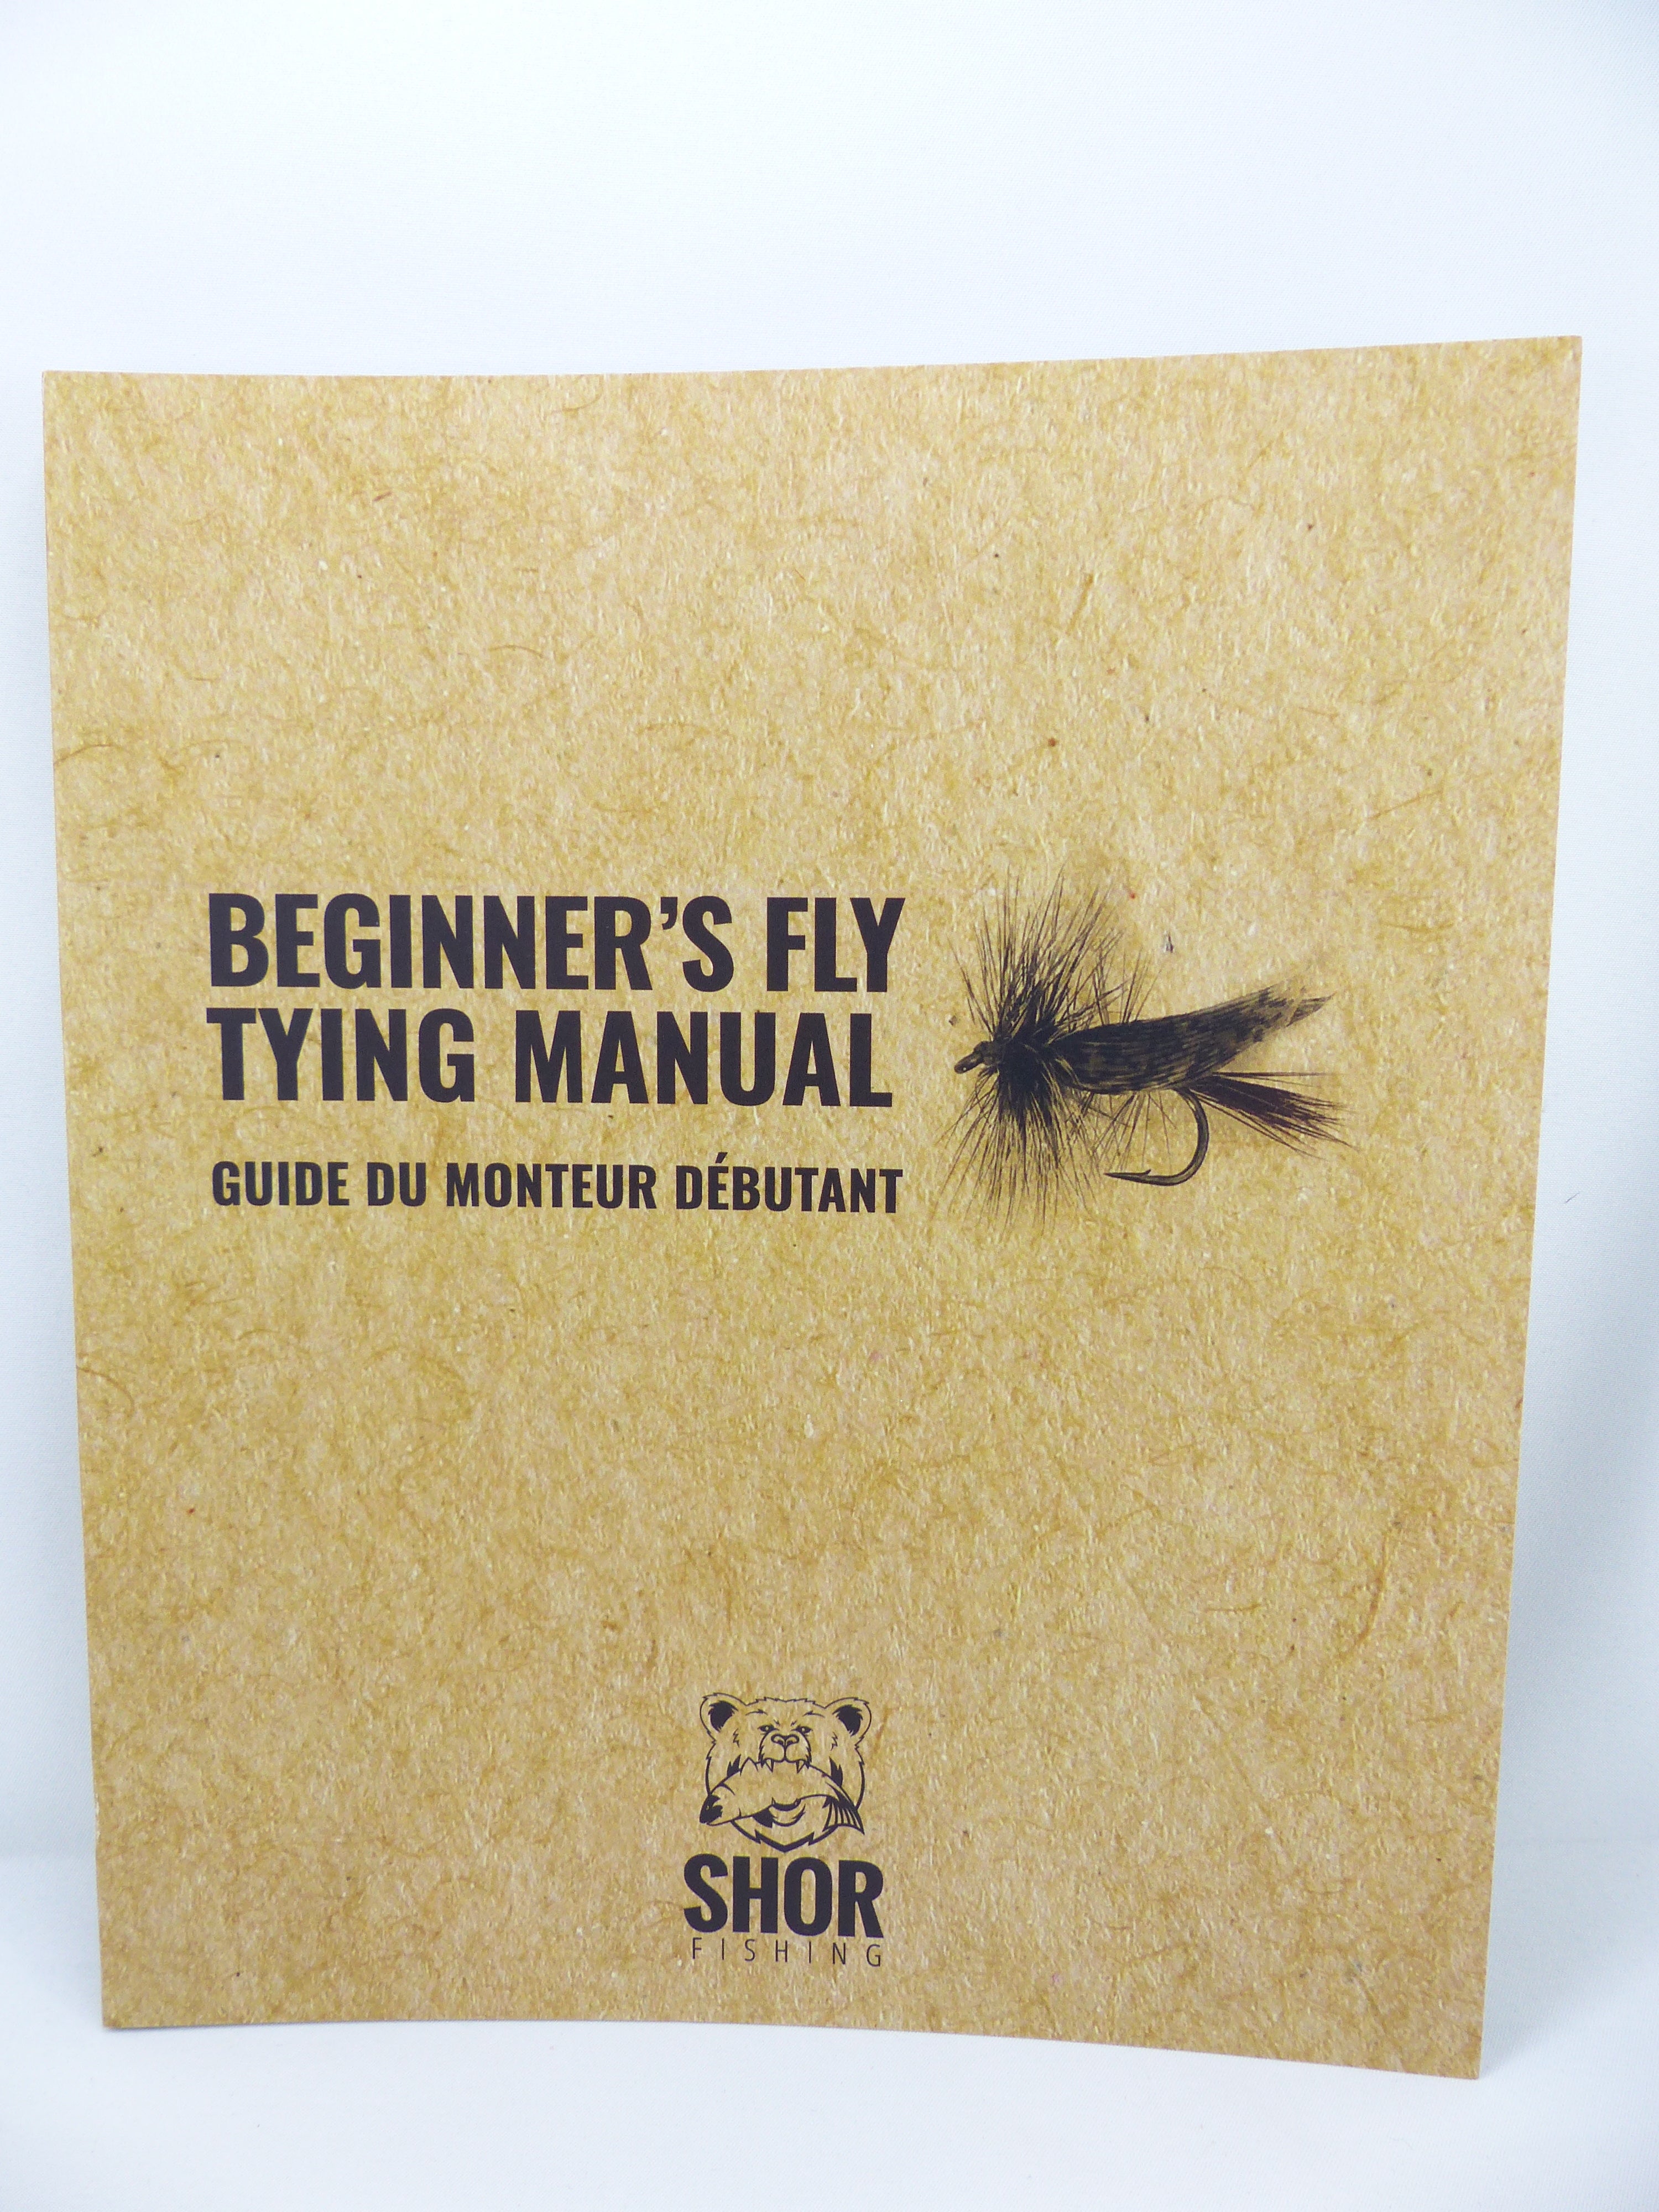 Shor - Beginner's Fly Tying Manual